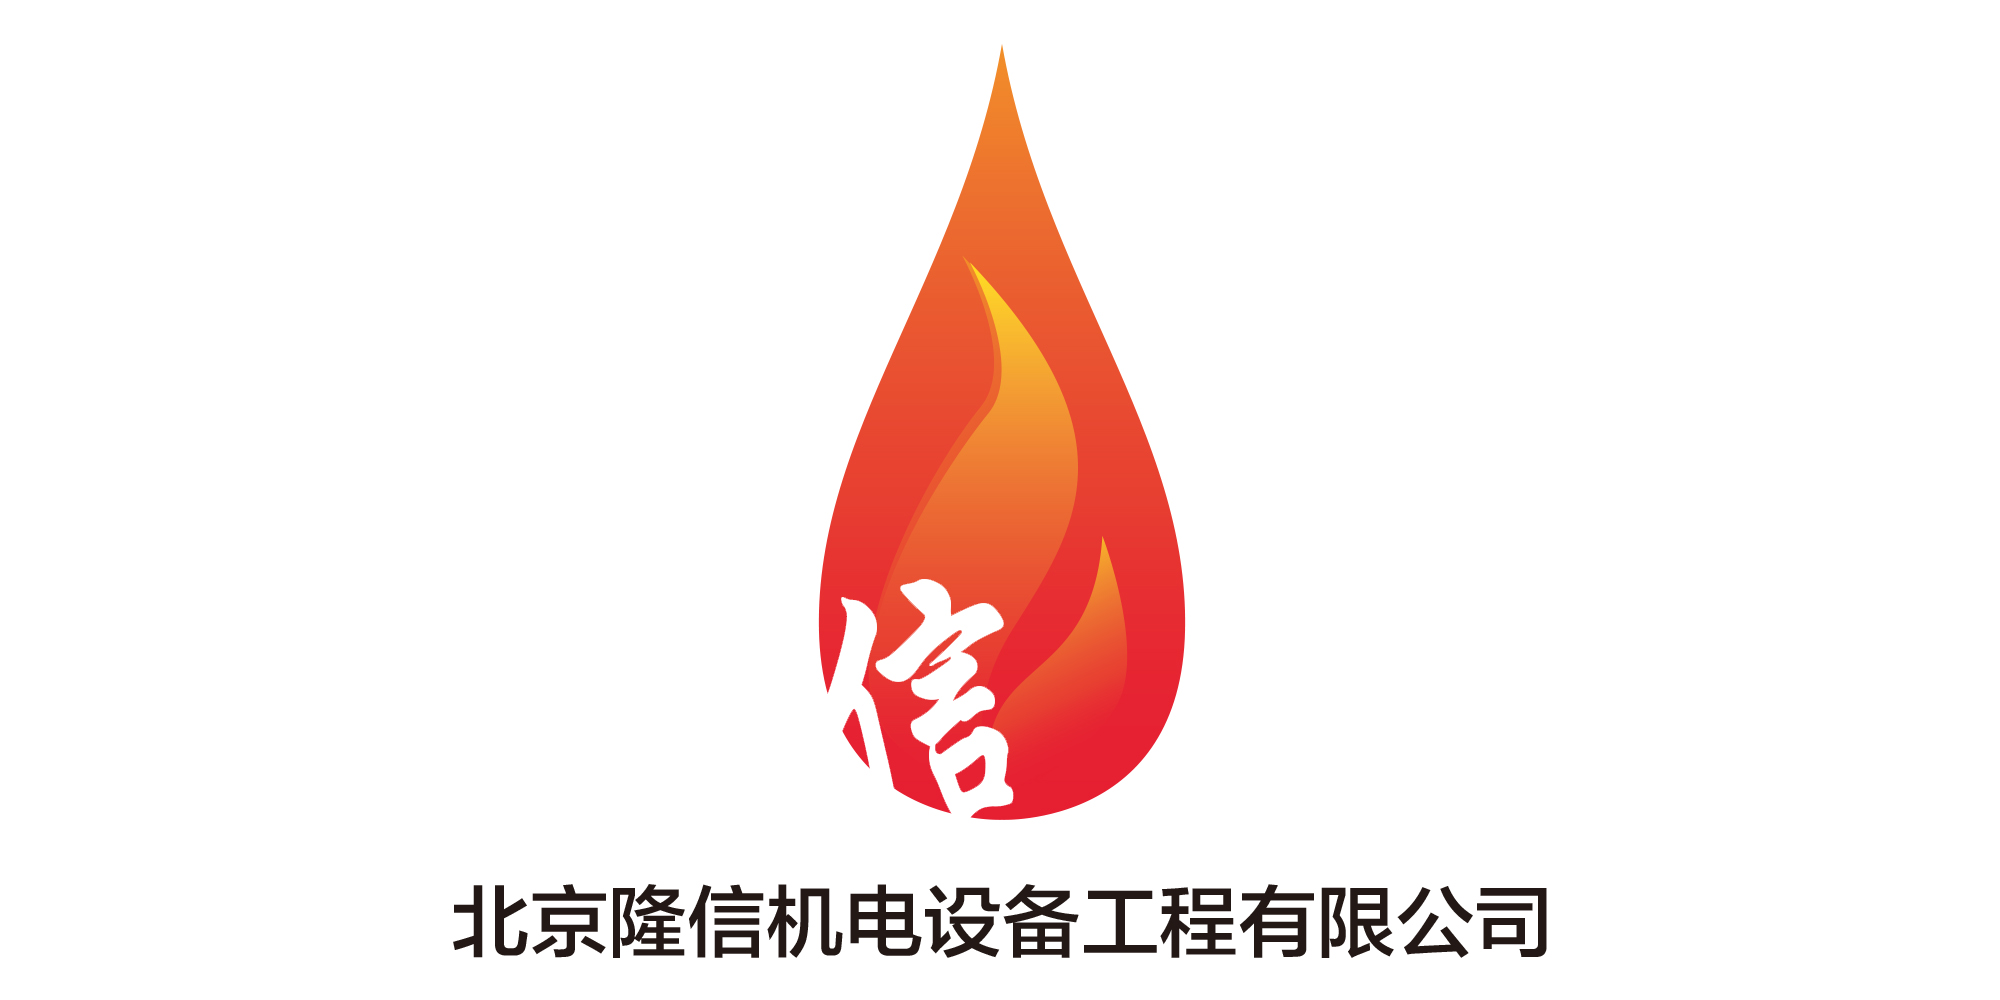 北京隆信機電設備工程有限公司